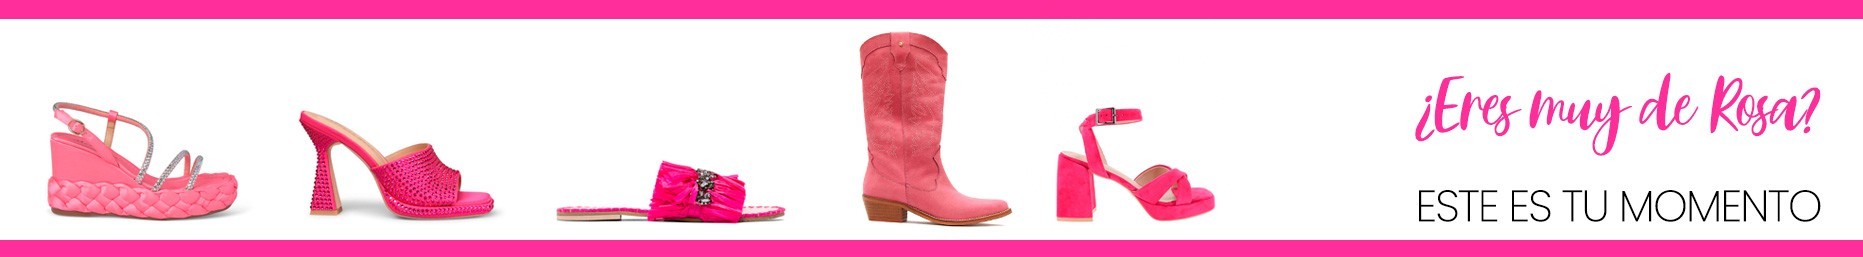 Calzado ROSA - PINK women shoes